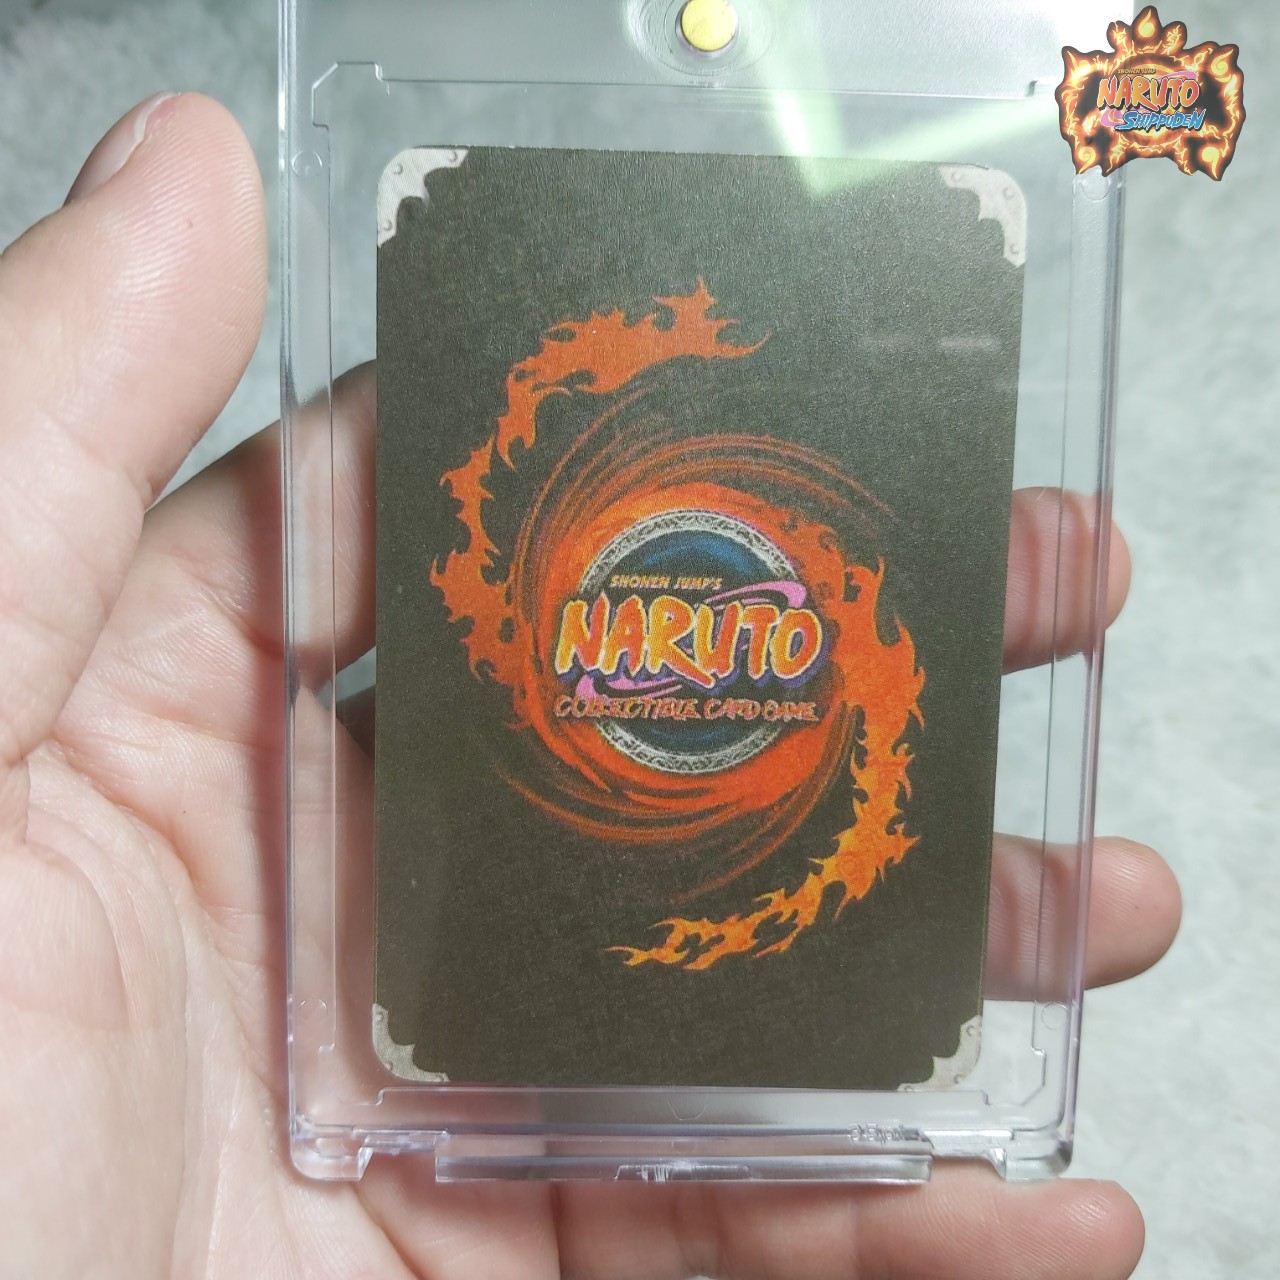 Thẻ Naruto Orochimaru 985 1 trong tam nin rắn Tặng kèm top loader bảo vệ 2054 1 20